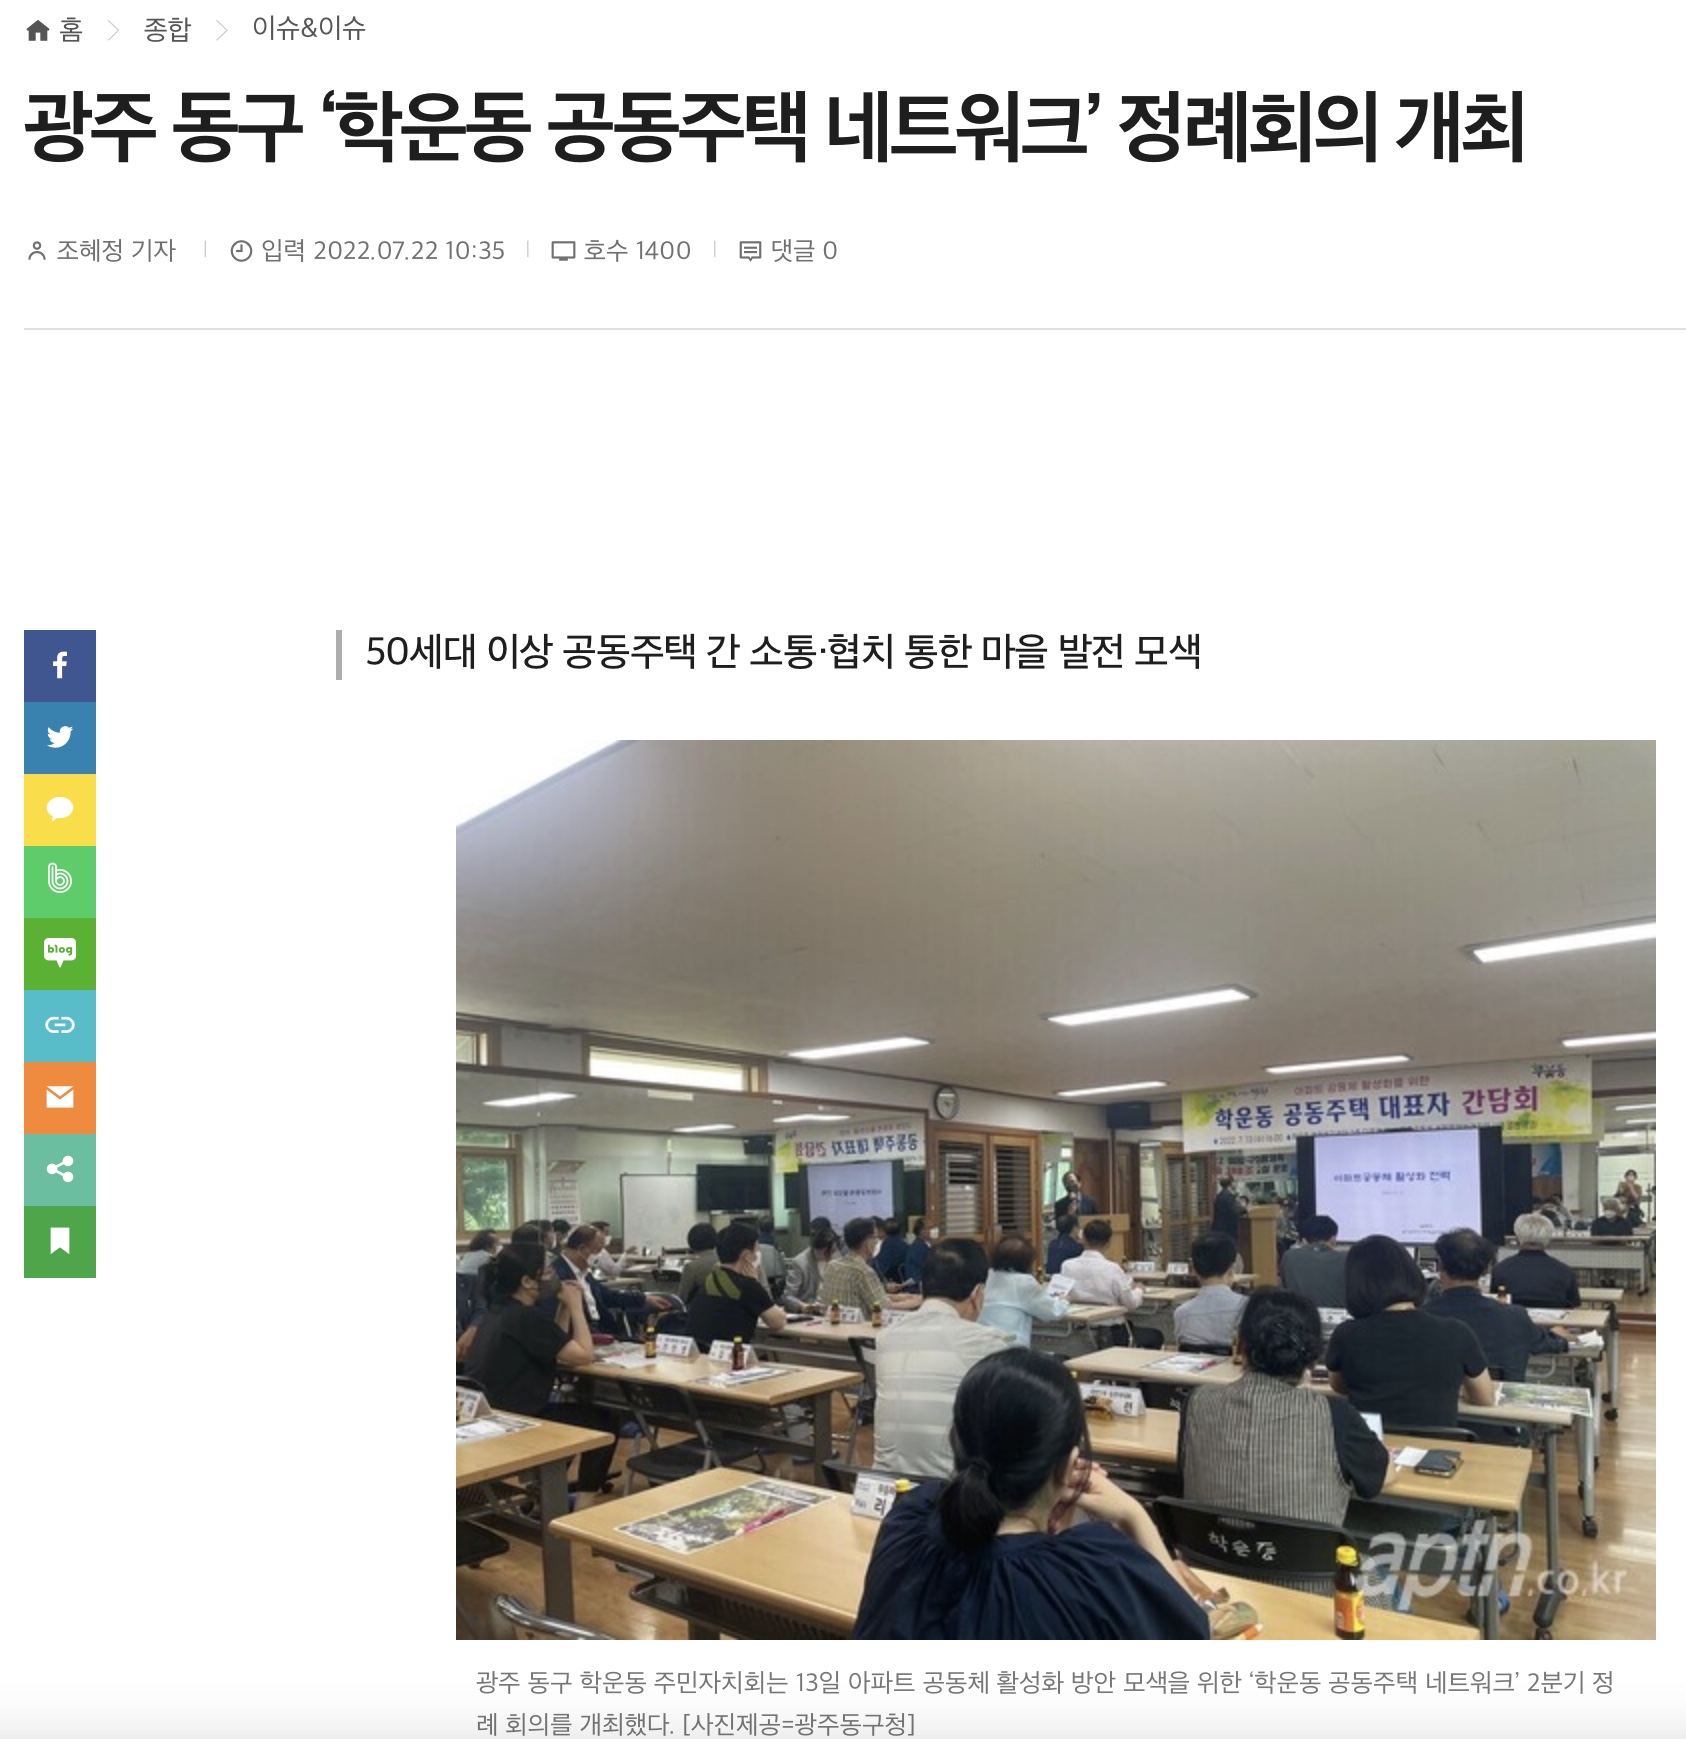 [아파트관리신문] 광주 동구 '학운동 공동주택 네트워크' 정례회의 개최